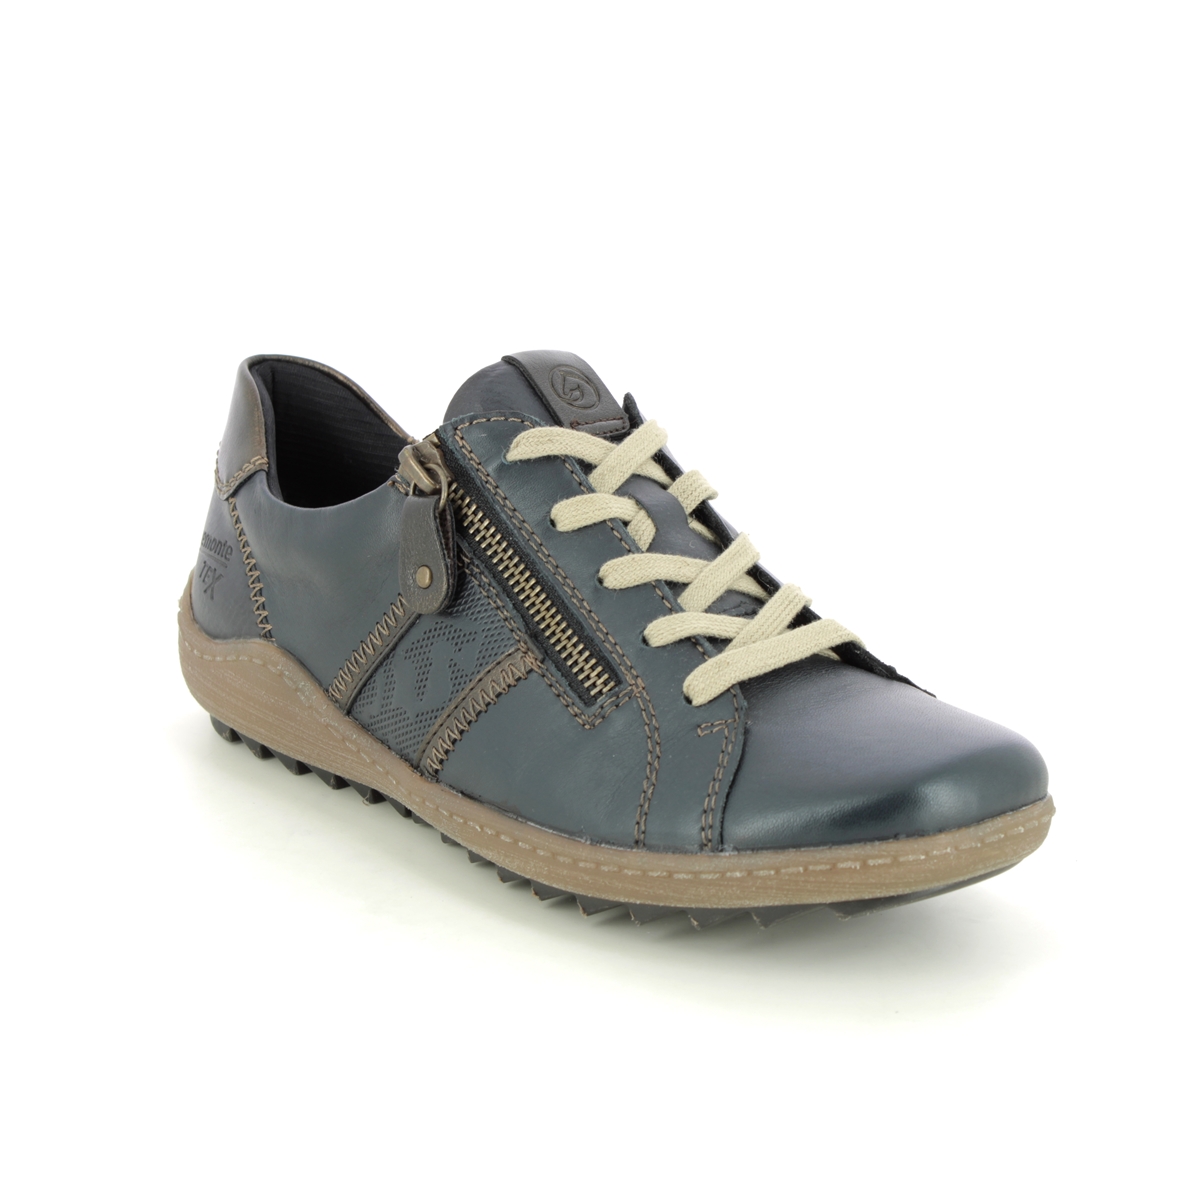 waterbestendig fysiek overtuigen Remonte Zigspo Tex 15 R1426-15 Navy leather lacing shoes